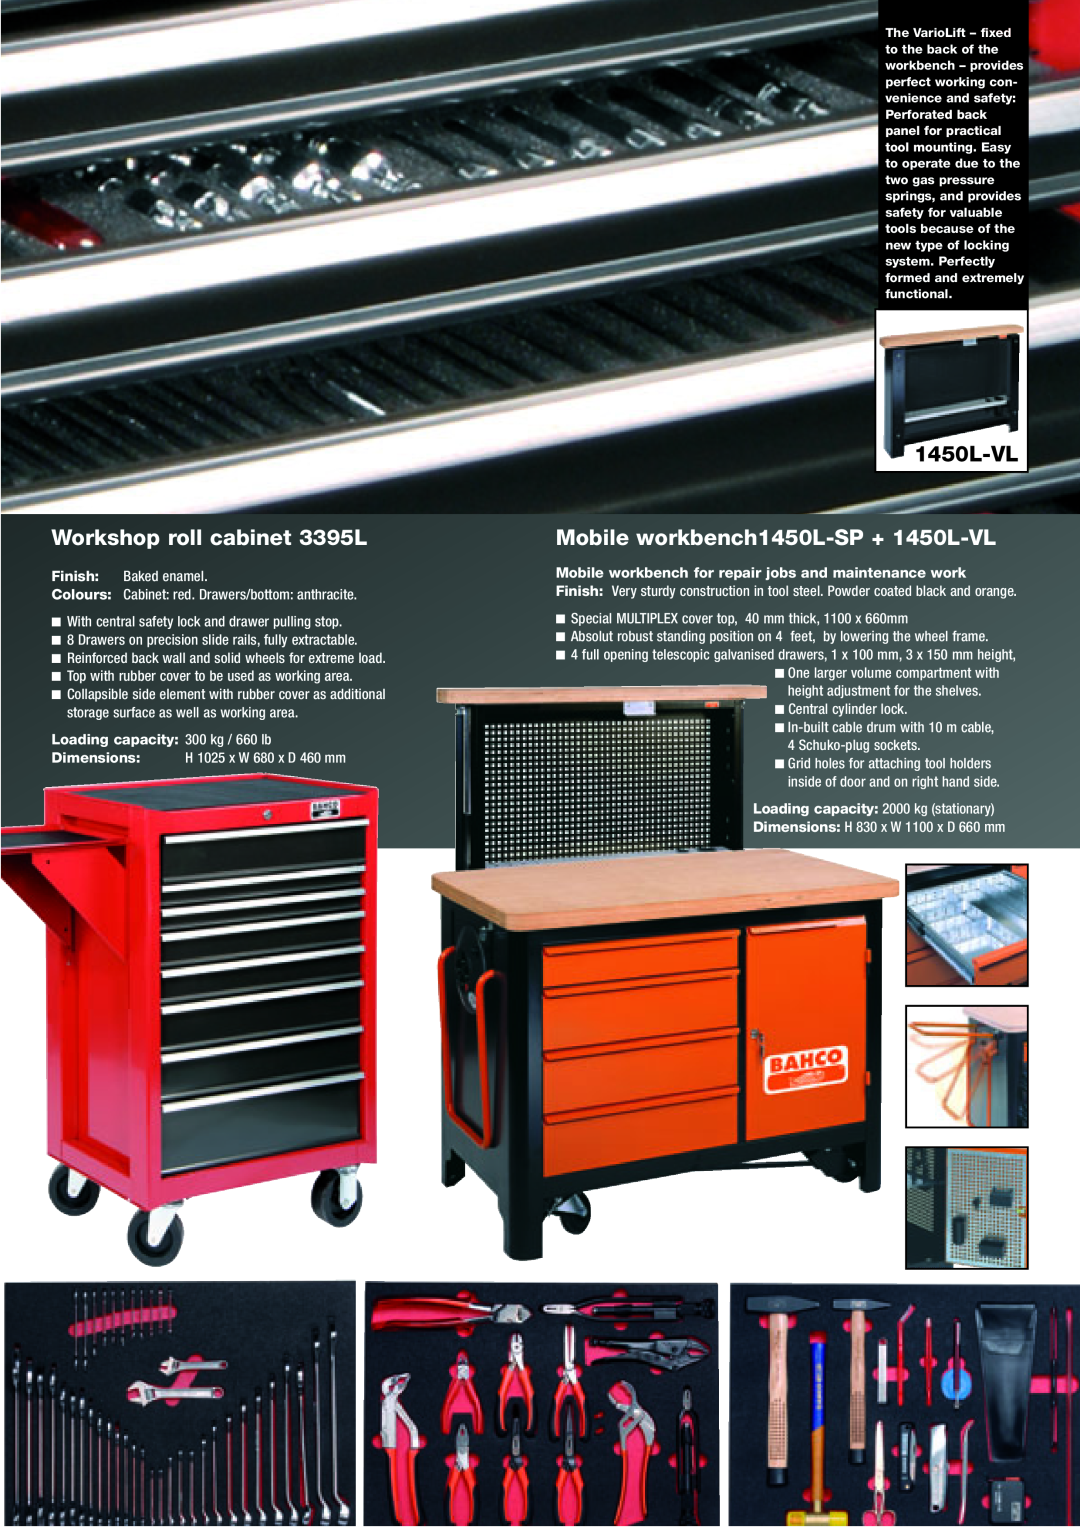 Bahco 3126N-LHFR Workshop roll cabinet 3395L, Mobile workbench1450L-SP + 1450L-VL, Loading capacity 300 kg / 660 lb 